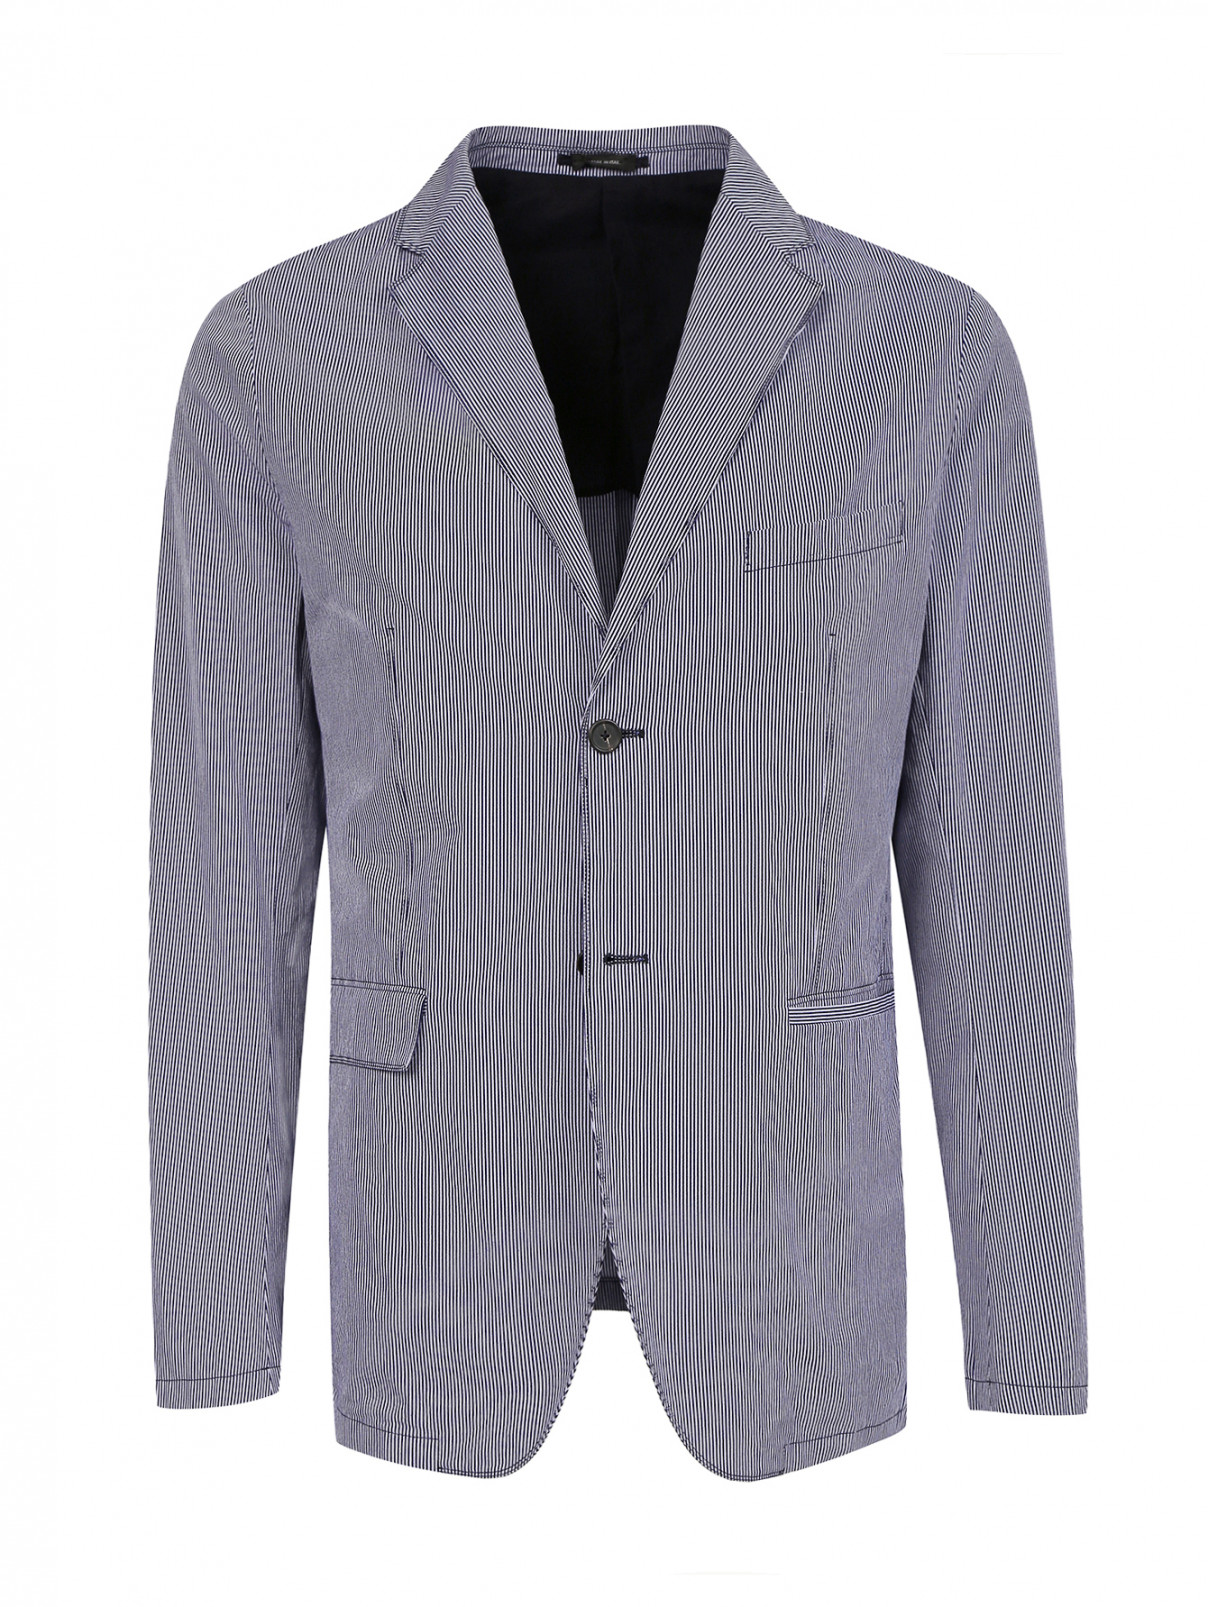 Пиджак однобортный из хлопка с узором "полоска" Jil Sander  –  Общий вид  – Цвет:  Синий